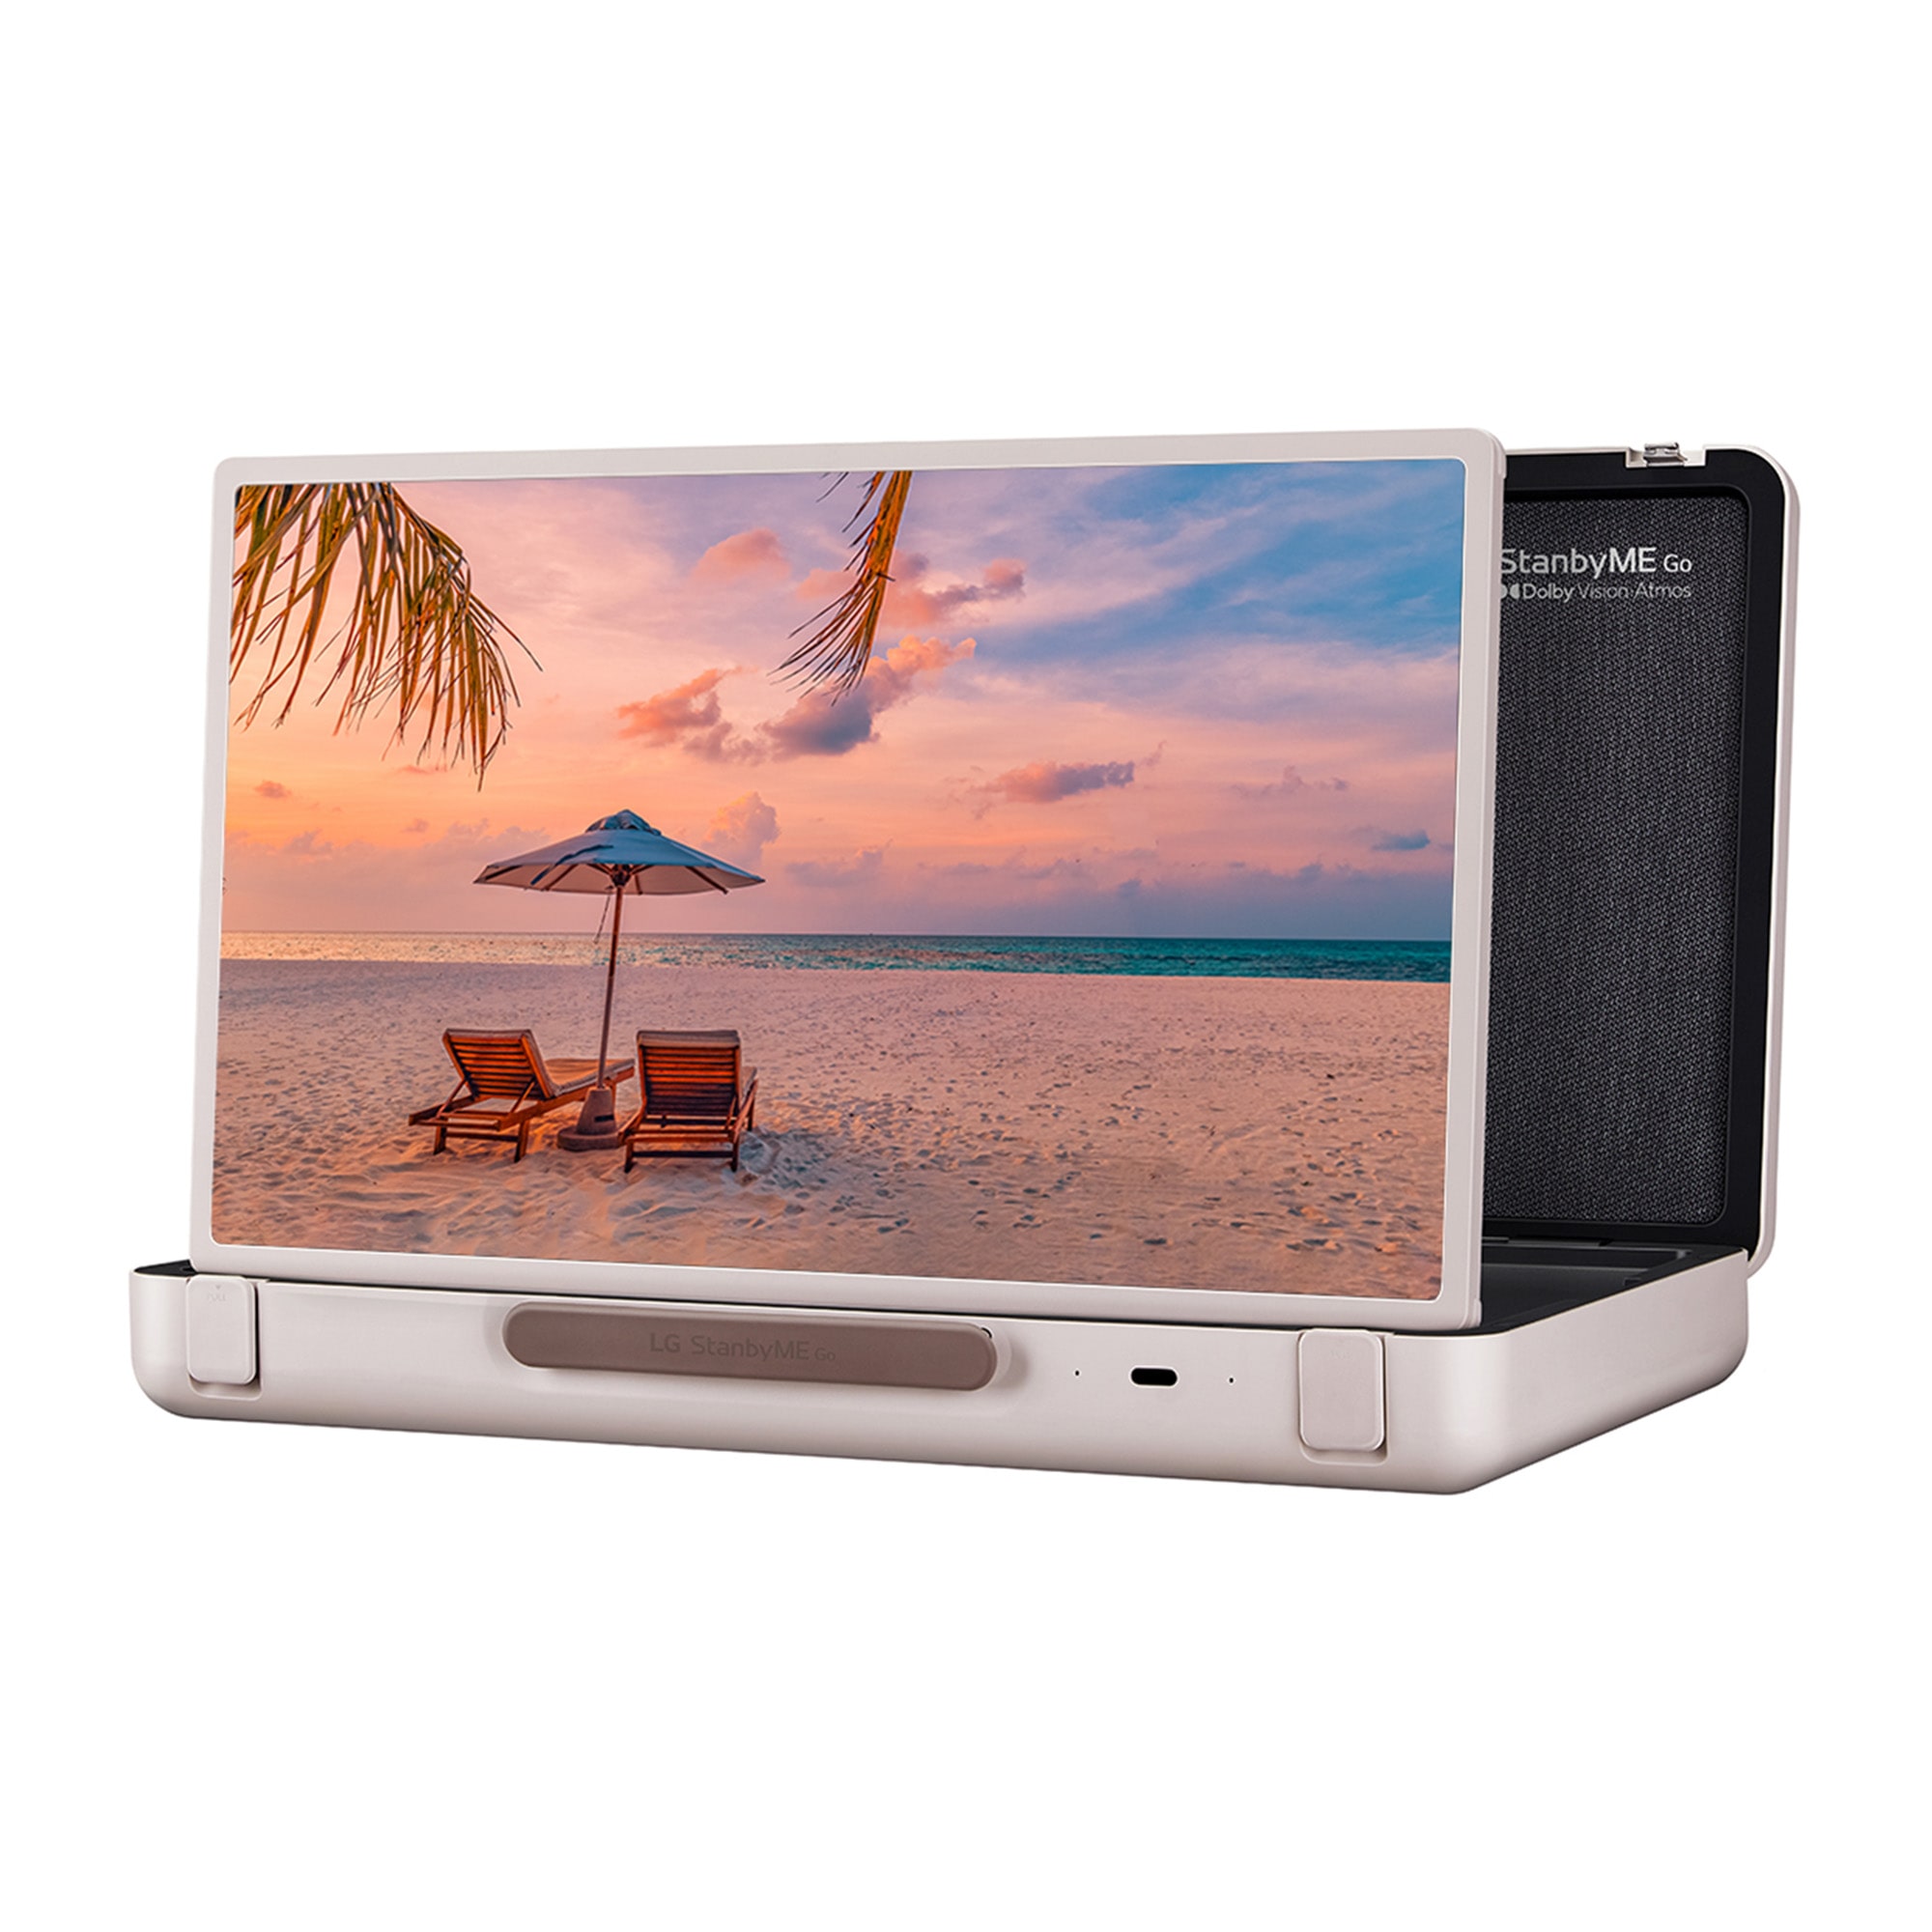 LG Stanbyme Go, el único Smart TV portátil y táctil<sup>(1)</sup> que te  acompaña estés donde estés.